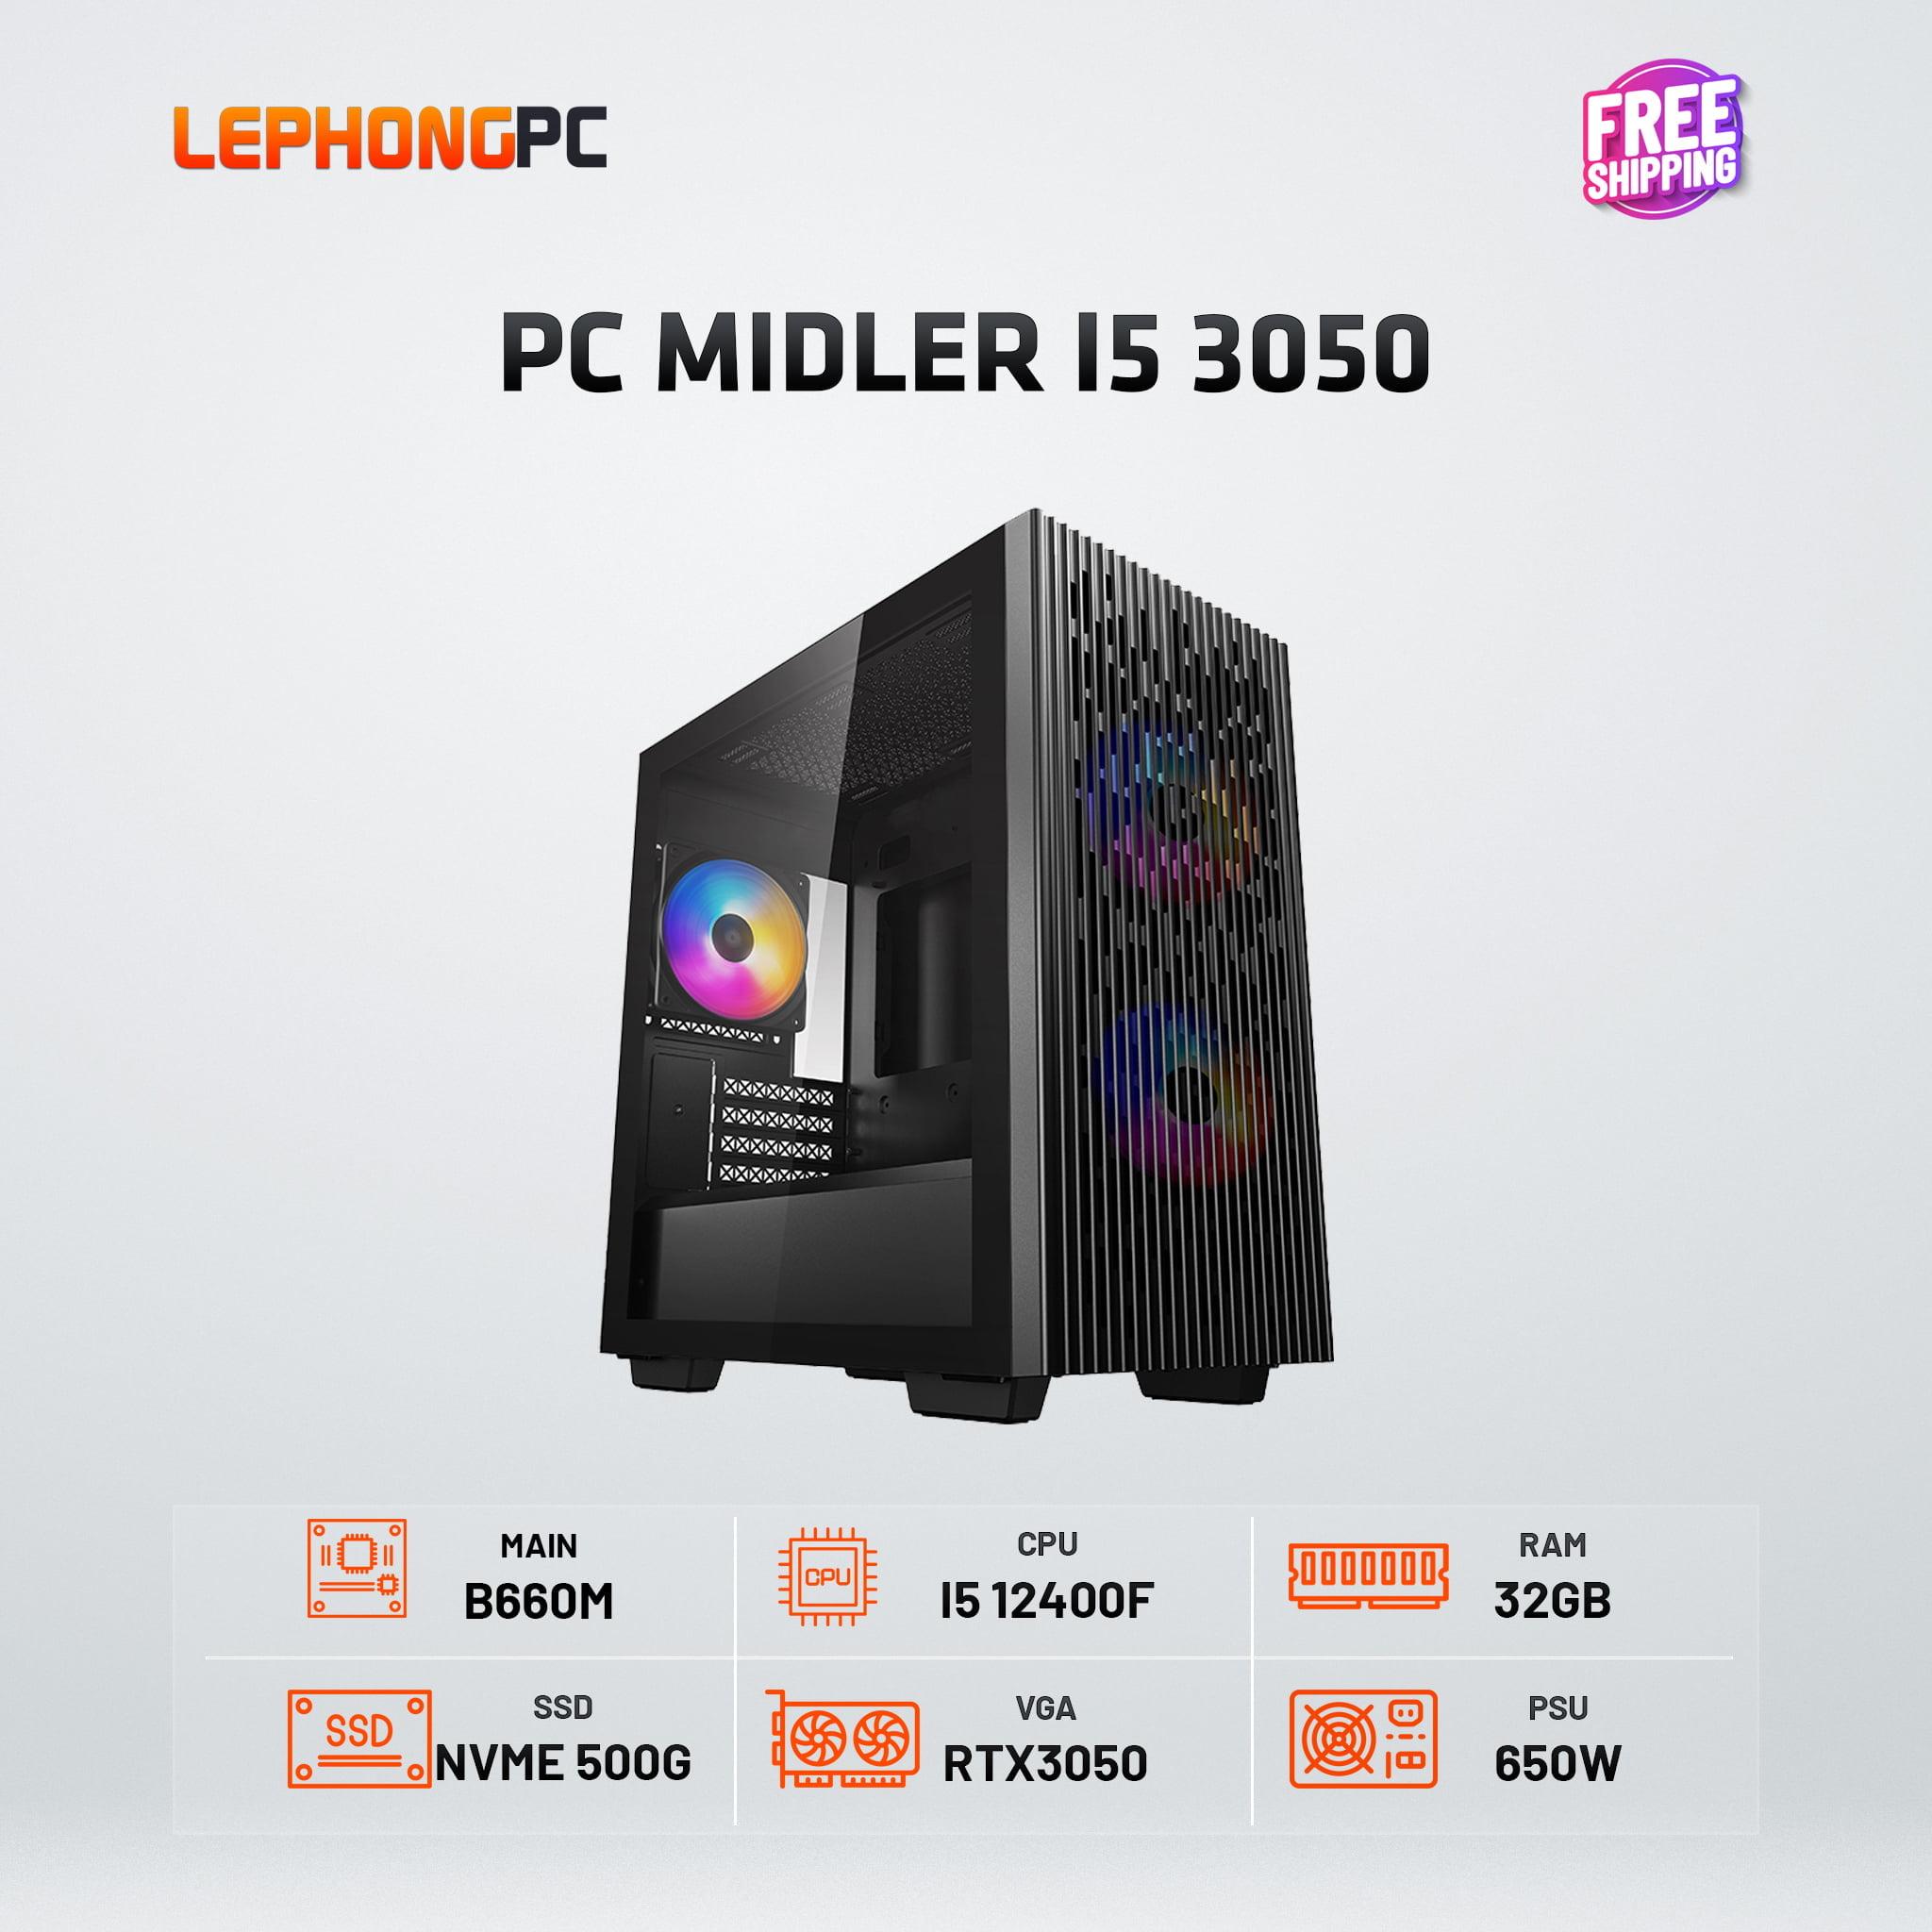 PC MIDLER I5 3050